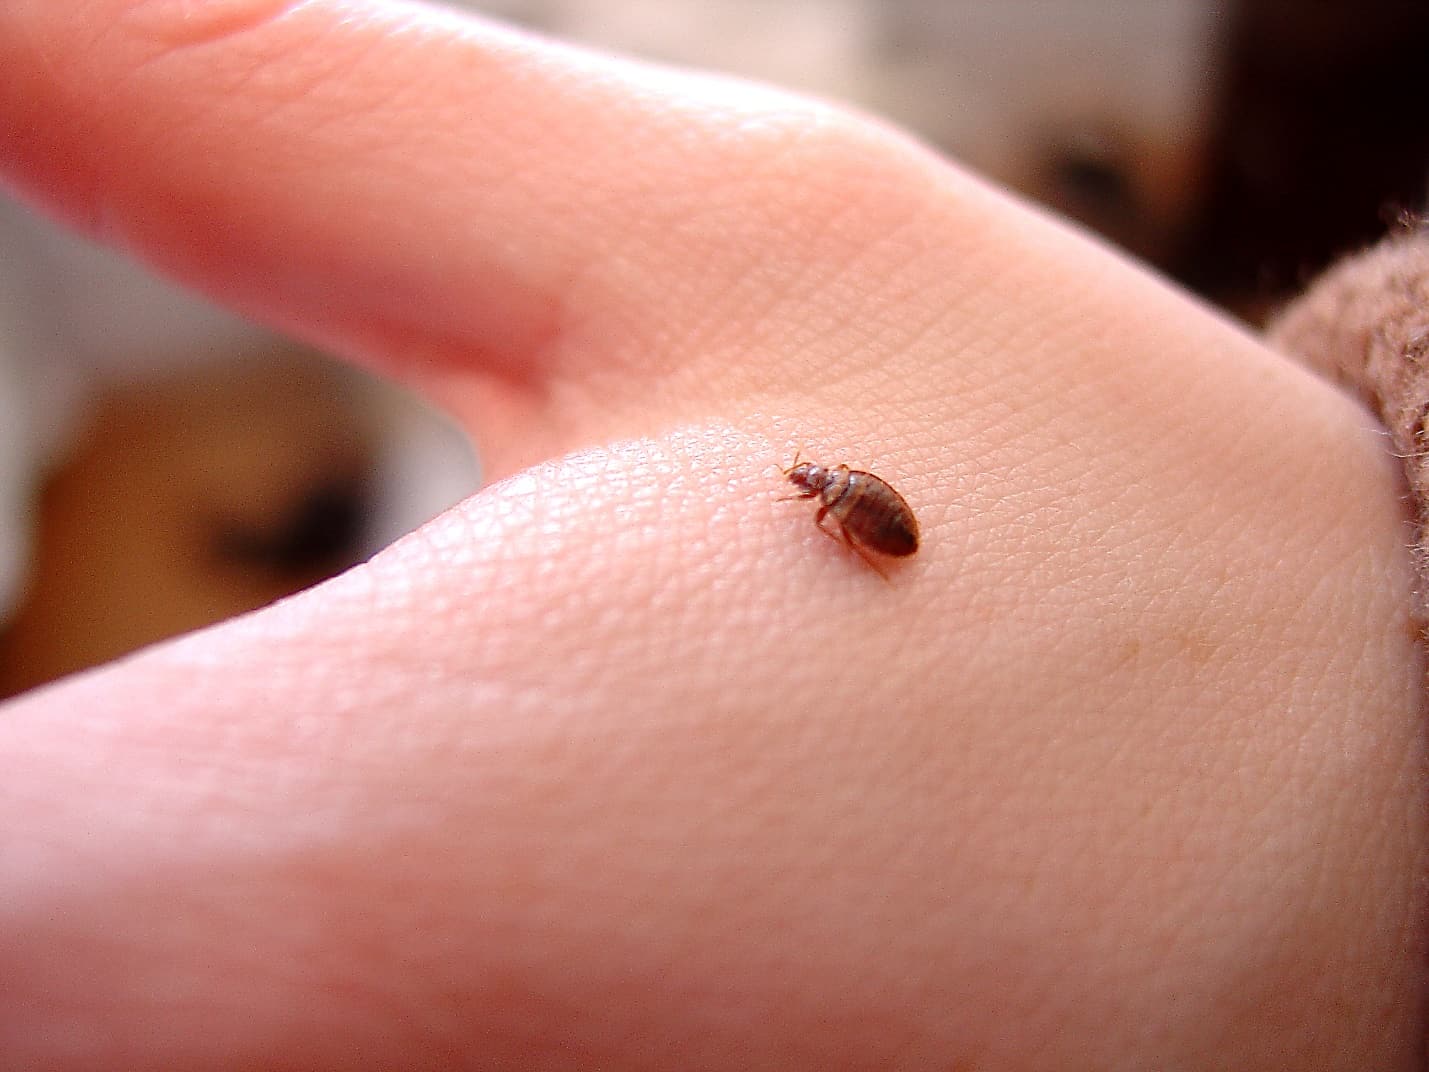 beg bug on the hand